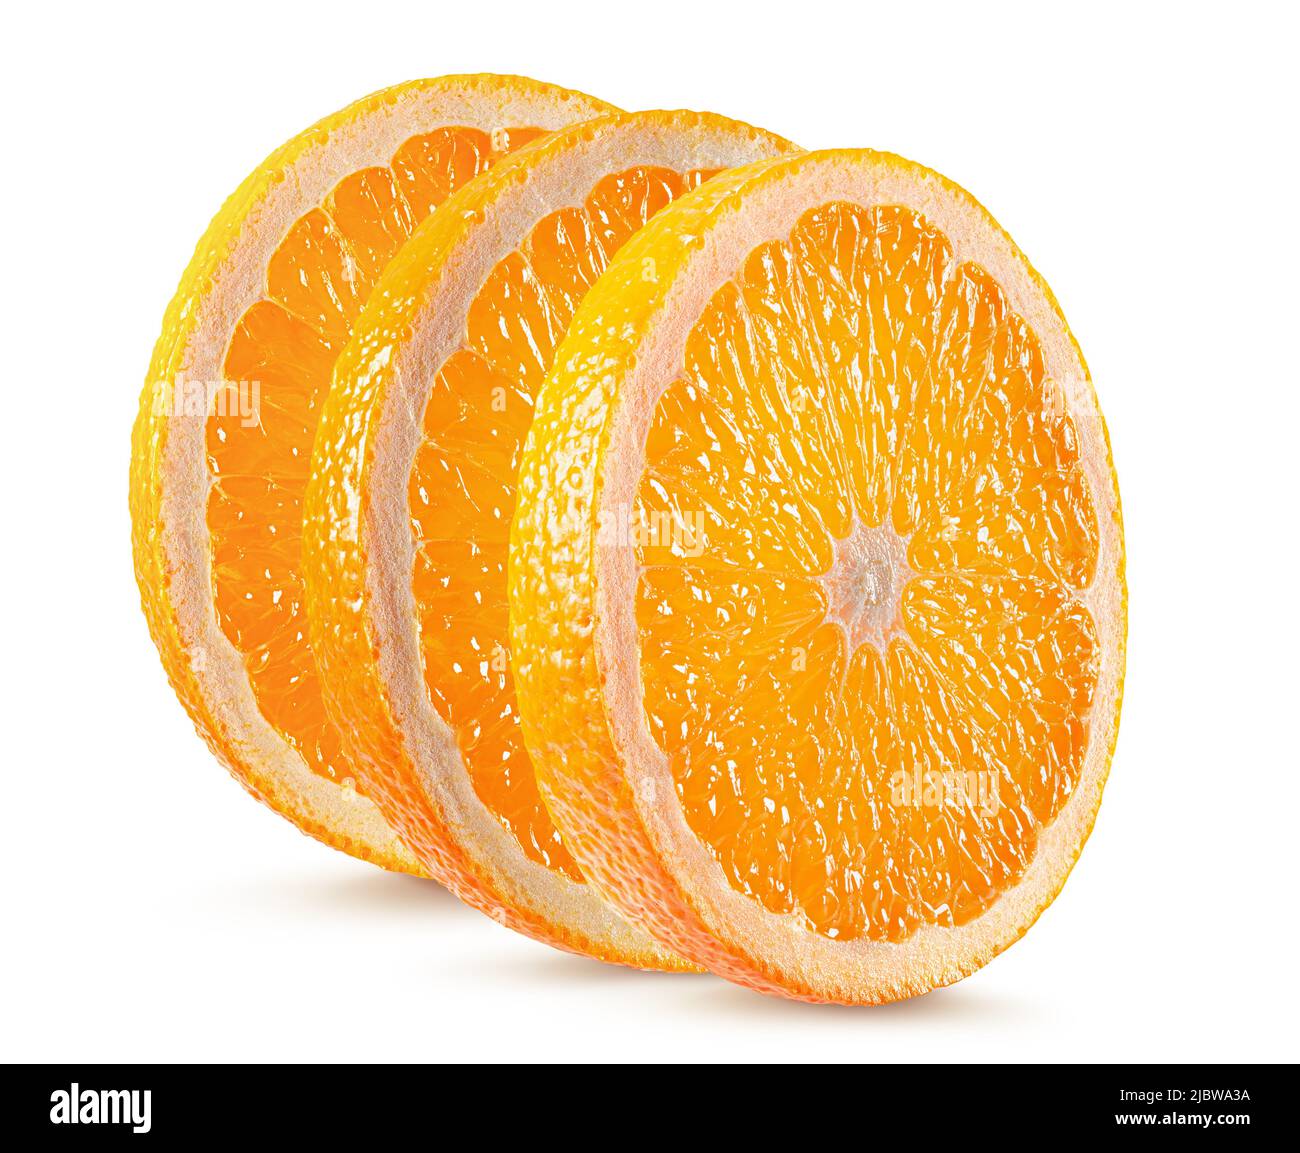 orange slices isolated on a white background. Stock Photo